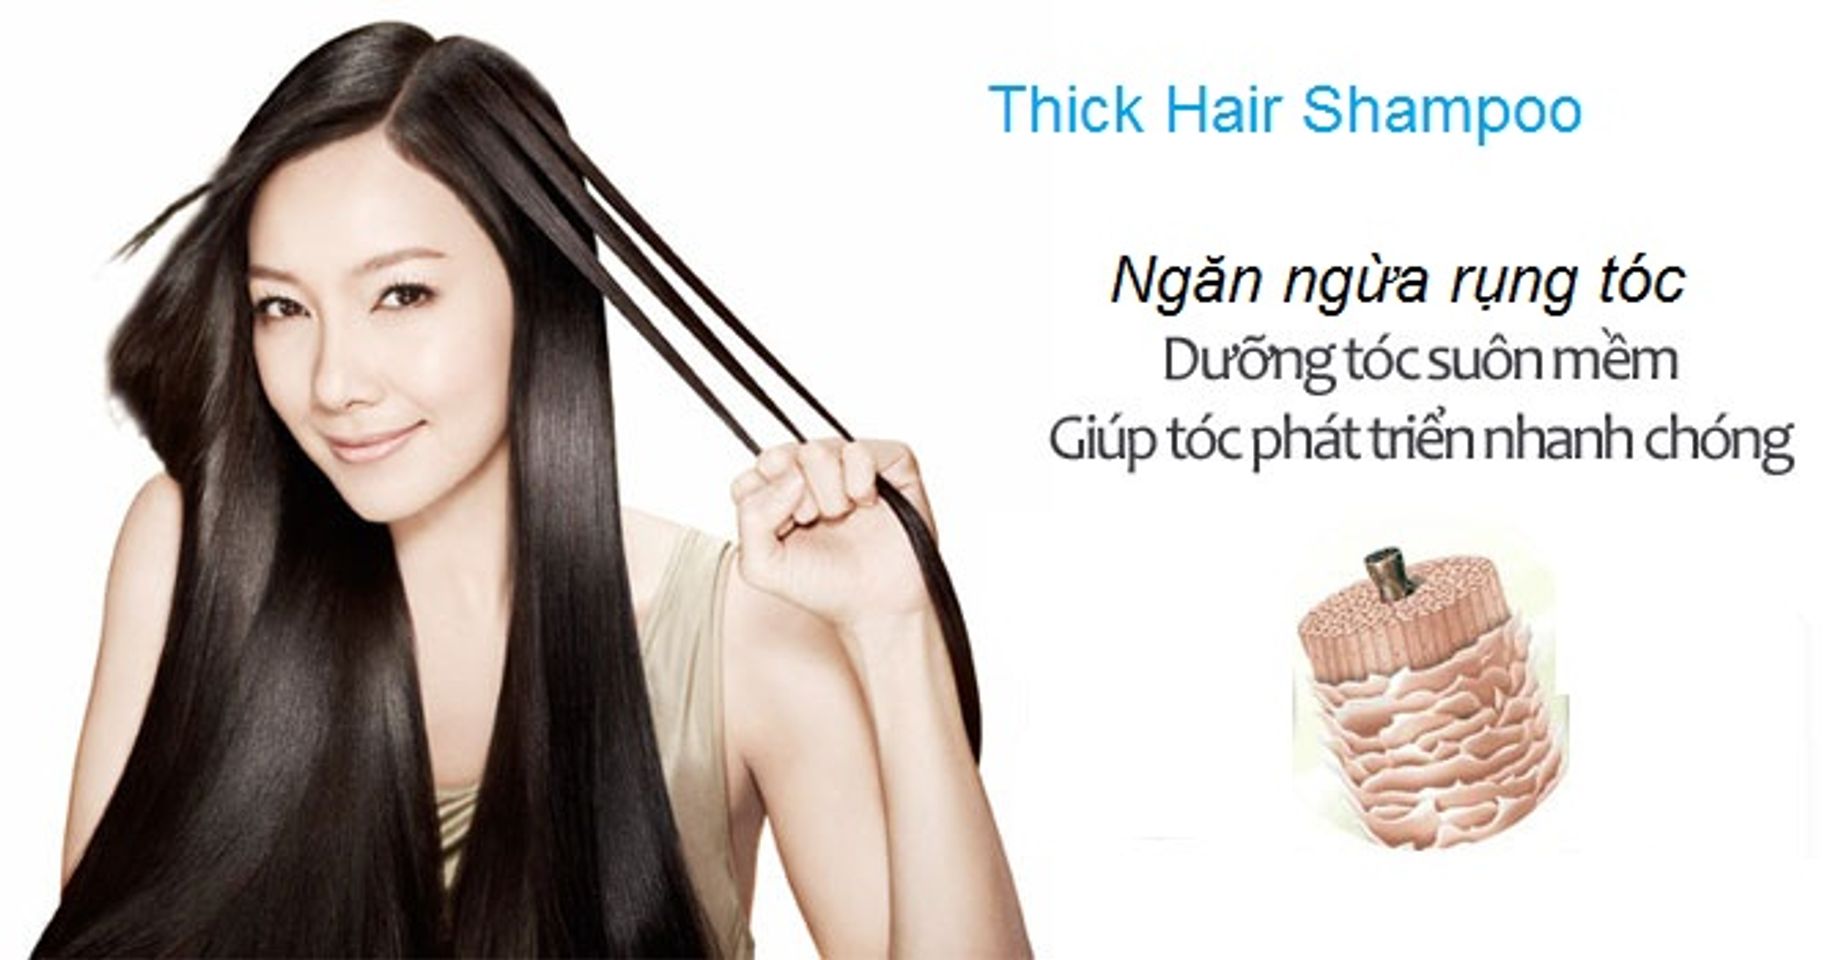 Dầu gội chống rụng tóc Thick Hair giúp loại bỏ hiệu quả các bã nhờn trên da đầu, đồng thời kích thích các tế bào tóc phát triển nhanh hơn